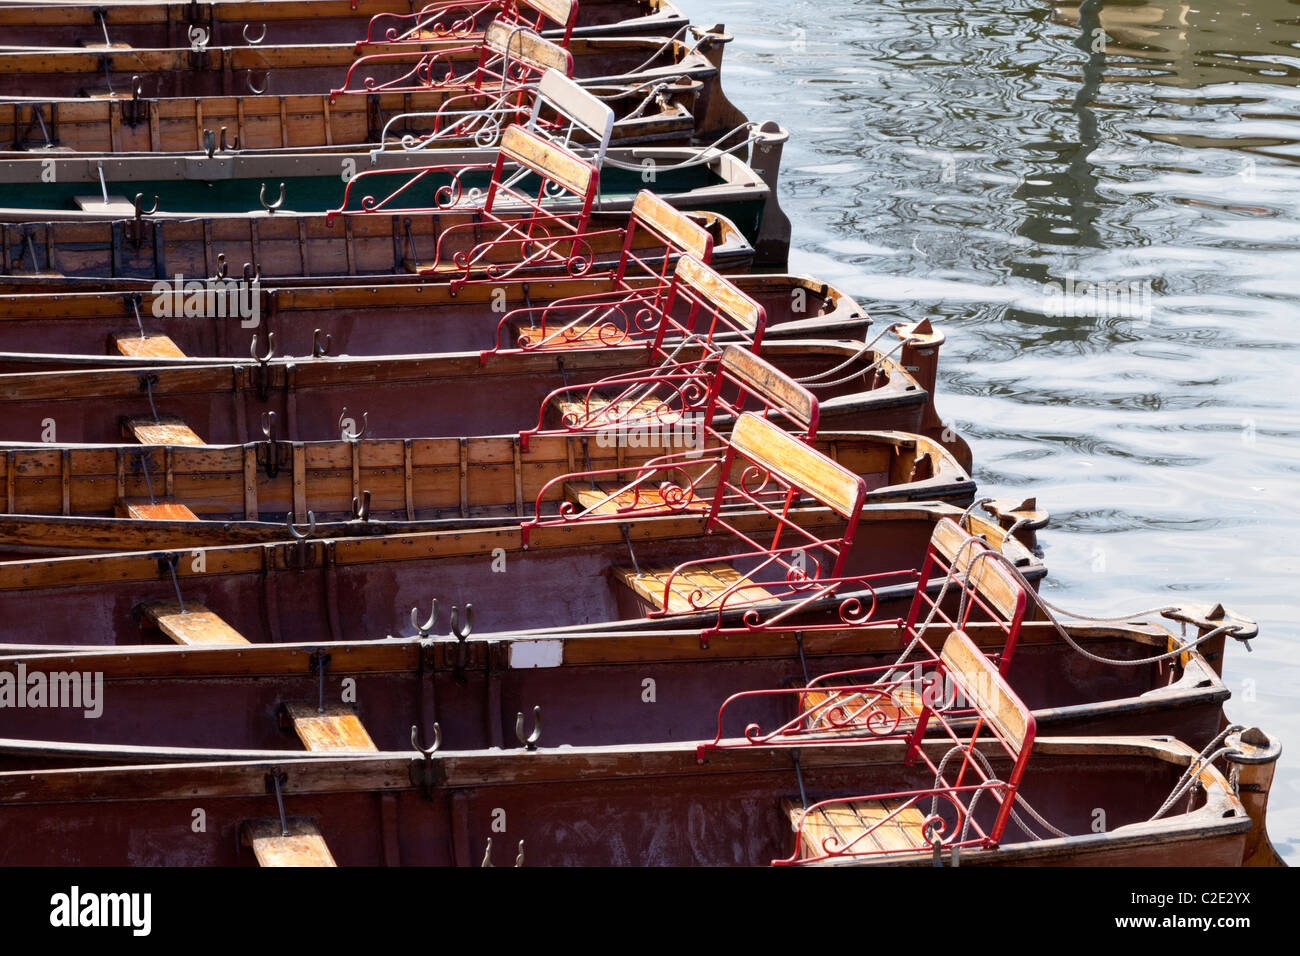 Noleggiare barche a remi sul fiume Avon a Stratford upon Avon, Warwickshire, Inghilterra, Regno Unito Foto Stock